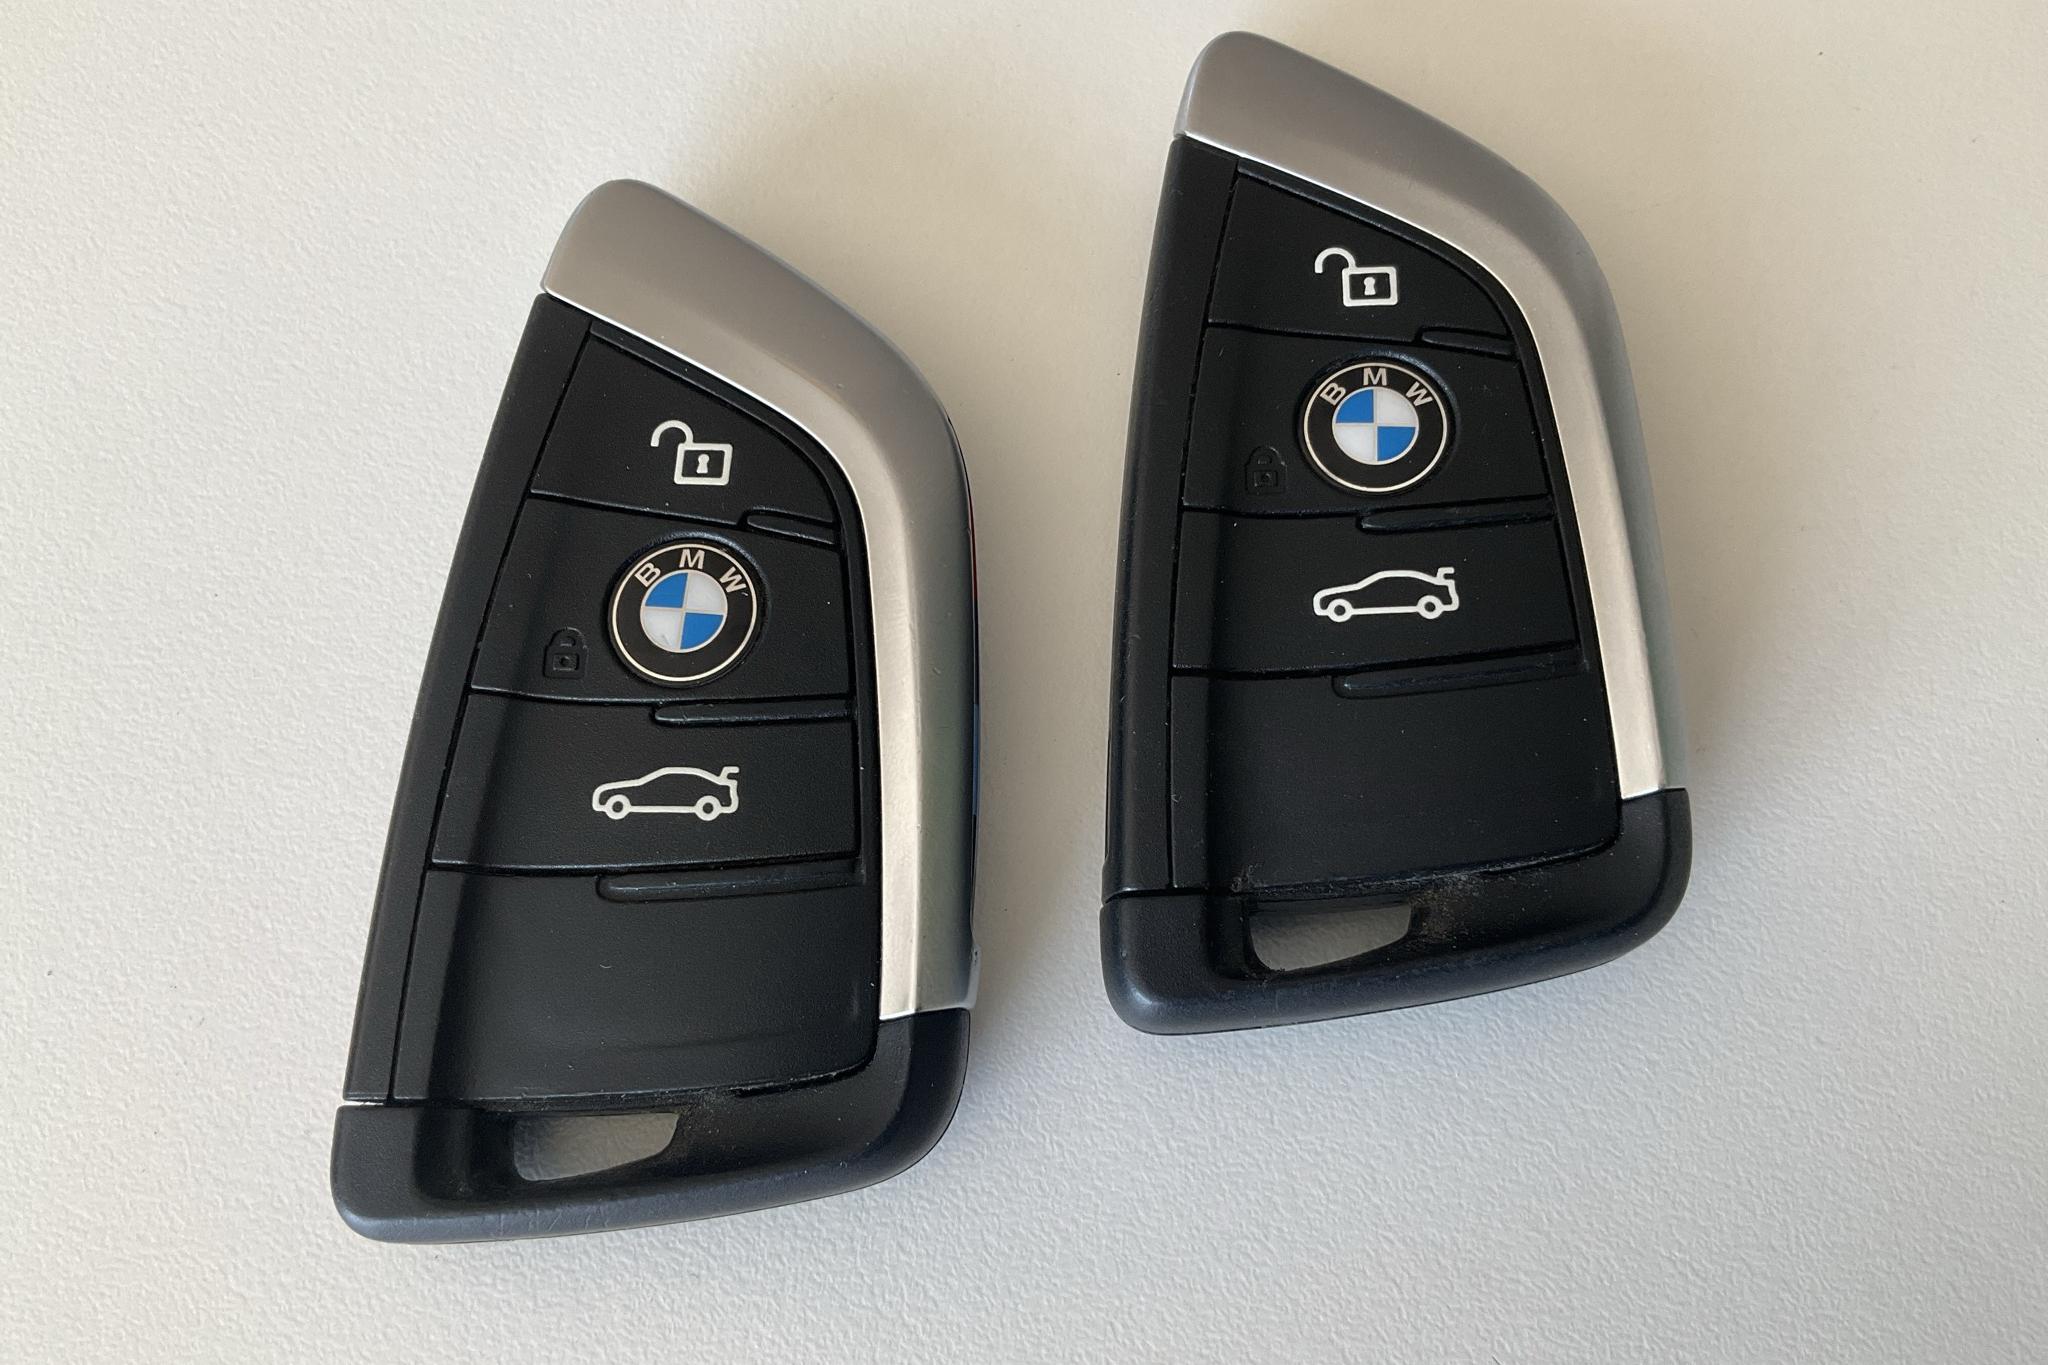 BMW X1 xDrive25e 9,7 kWh LCI, F48 (220hk) - 93 860 km - Automatic - white - 2021